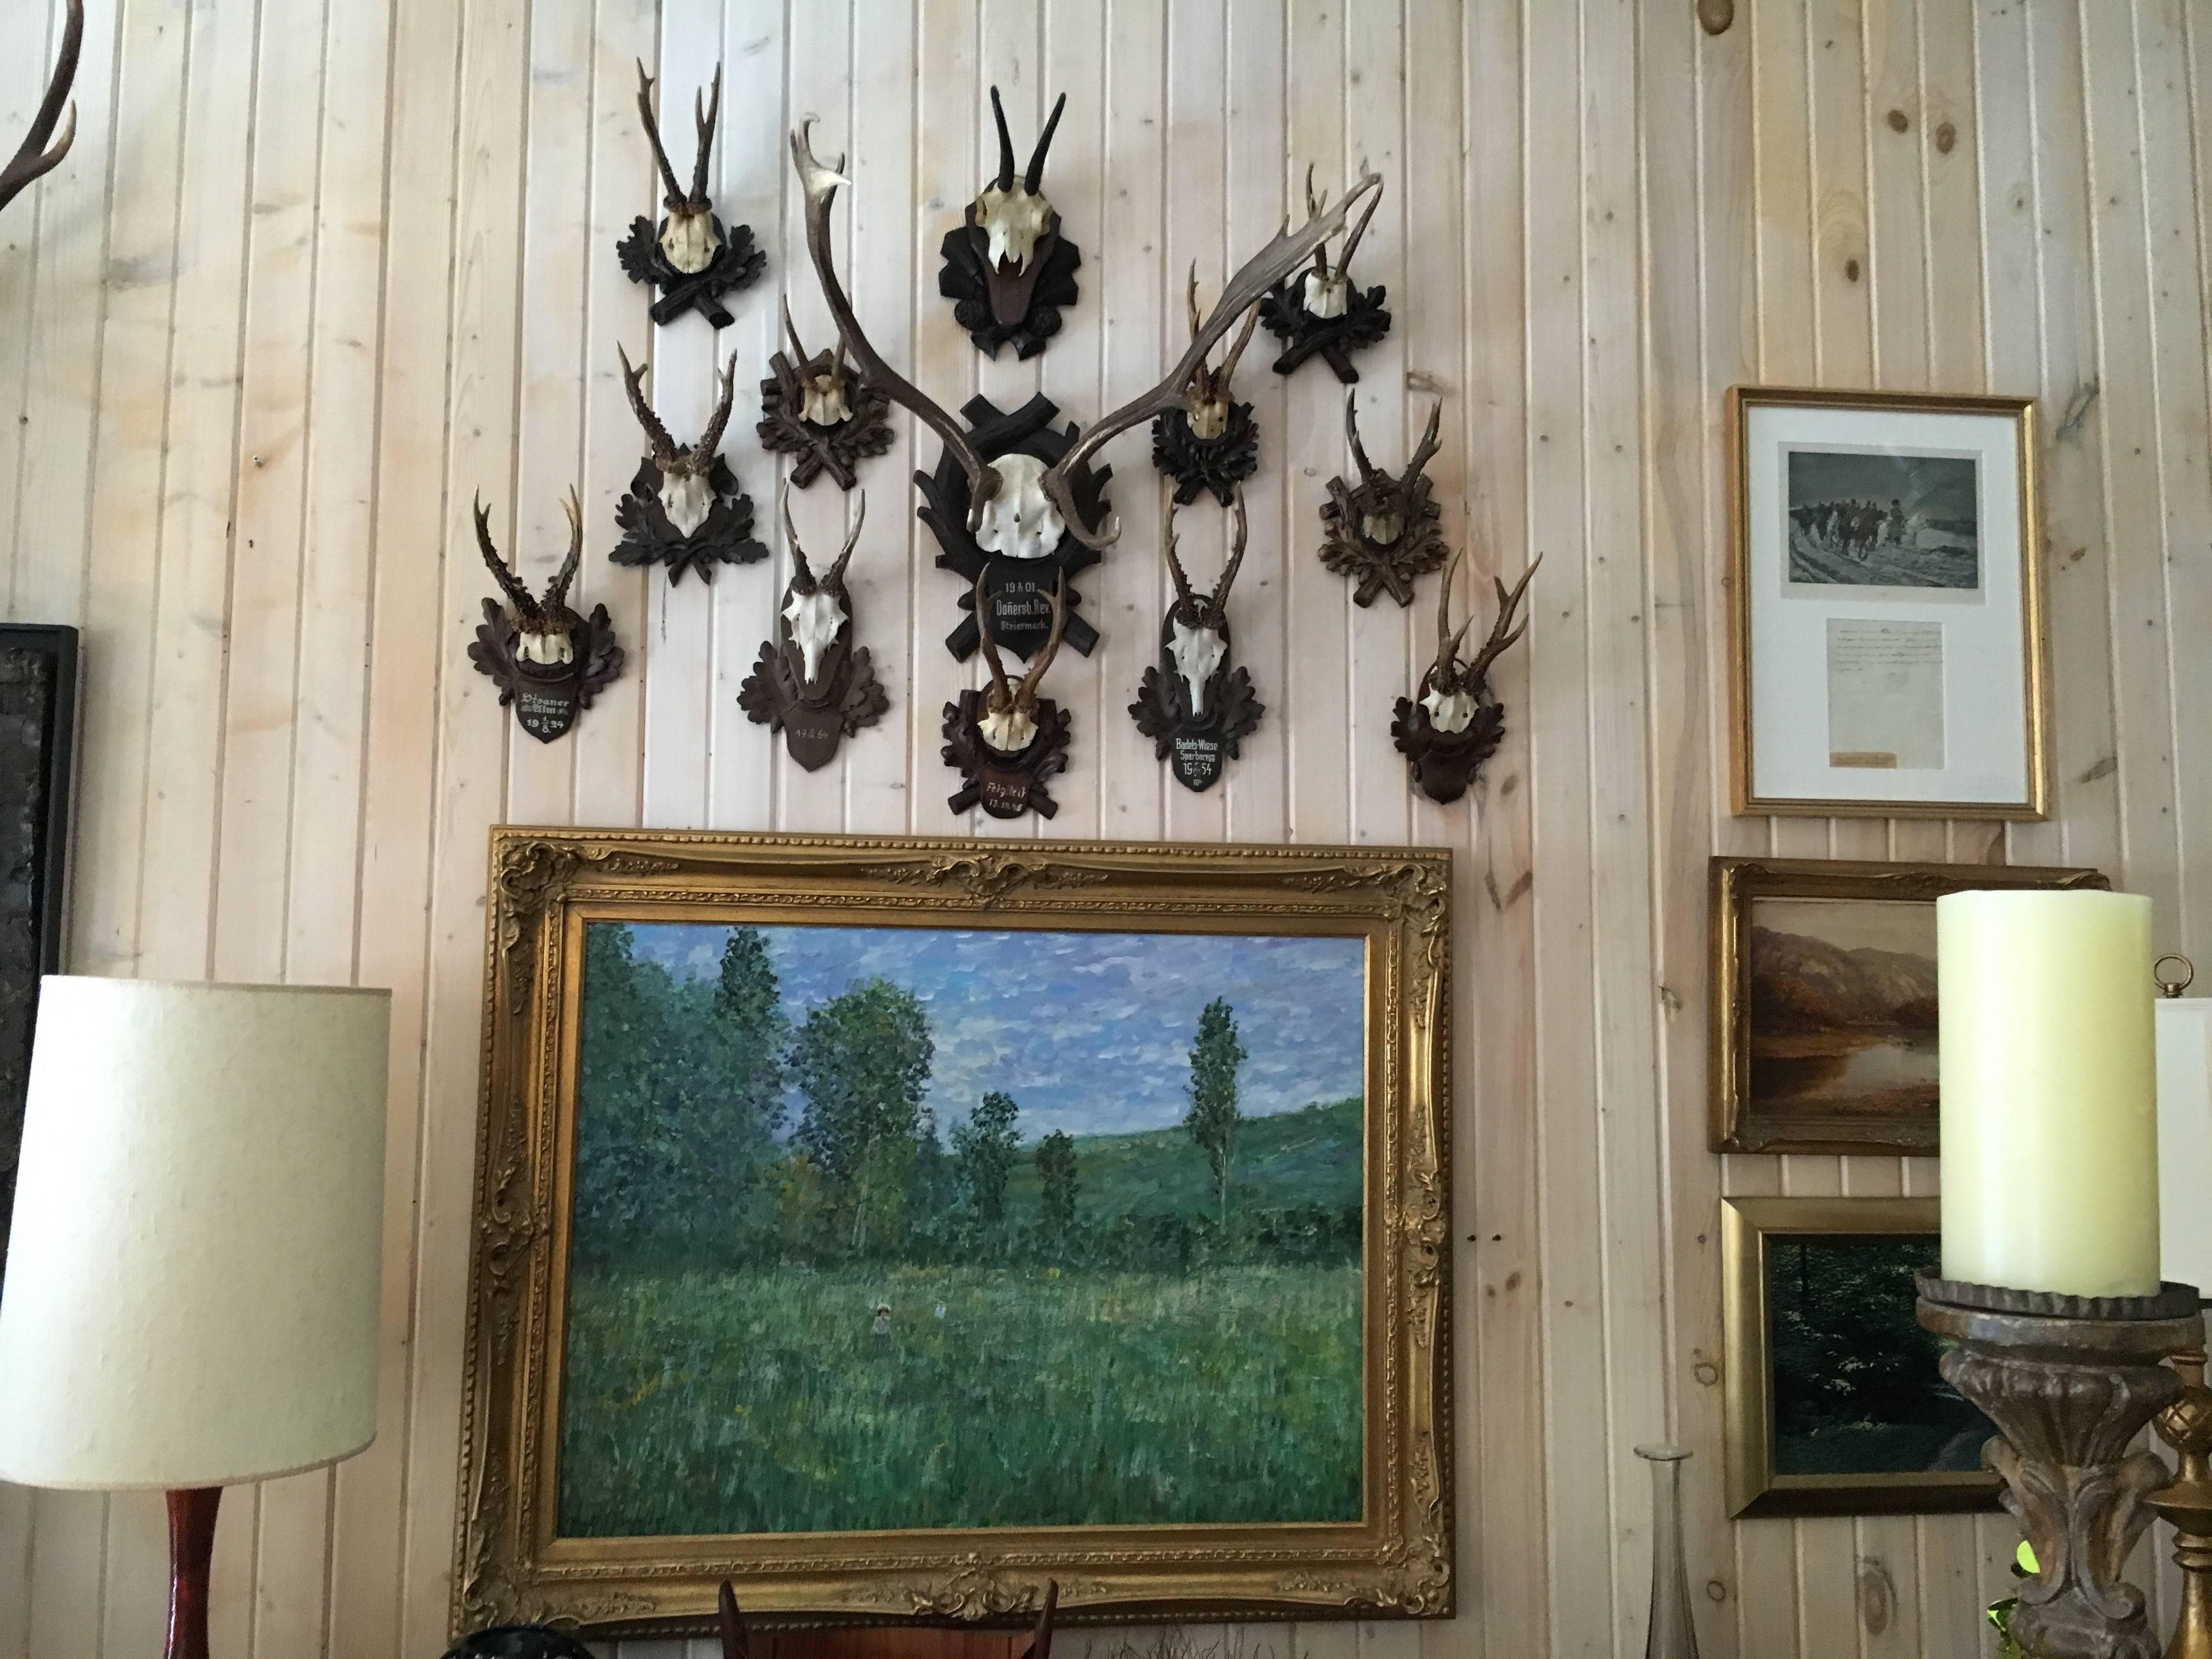 Sammlung von Schwarzwälder Reittieren, darunter ein Hirsch, zehn Rehe und ein Chinois, in verschiedenen Größen: Reh 12